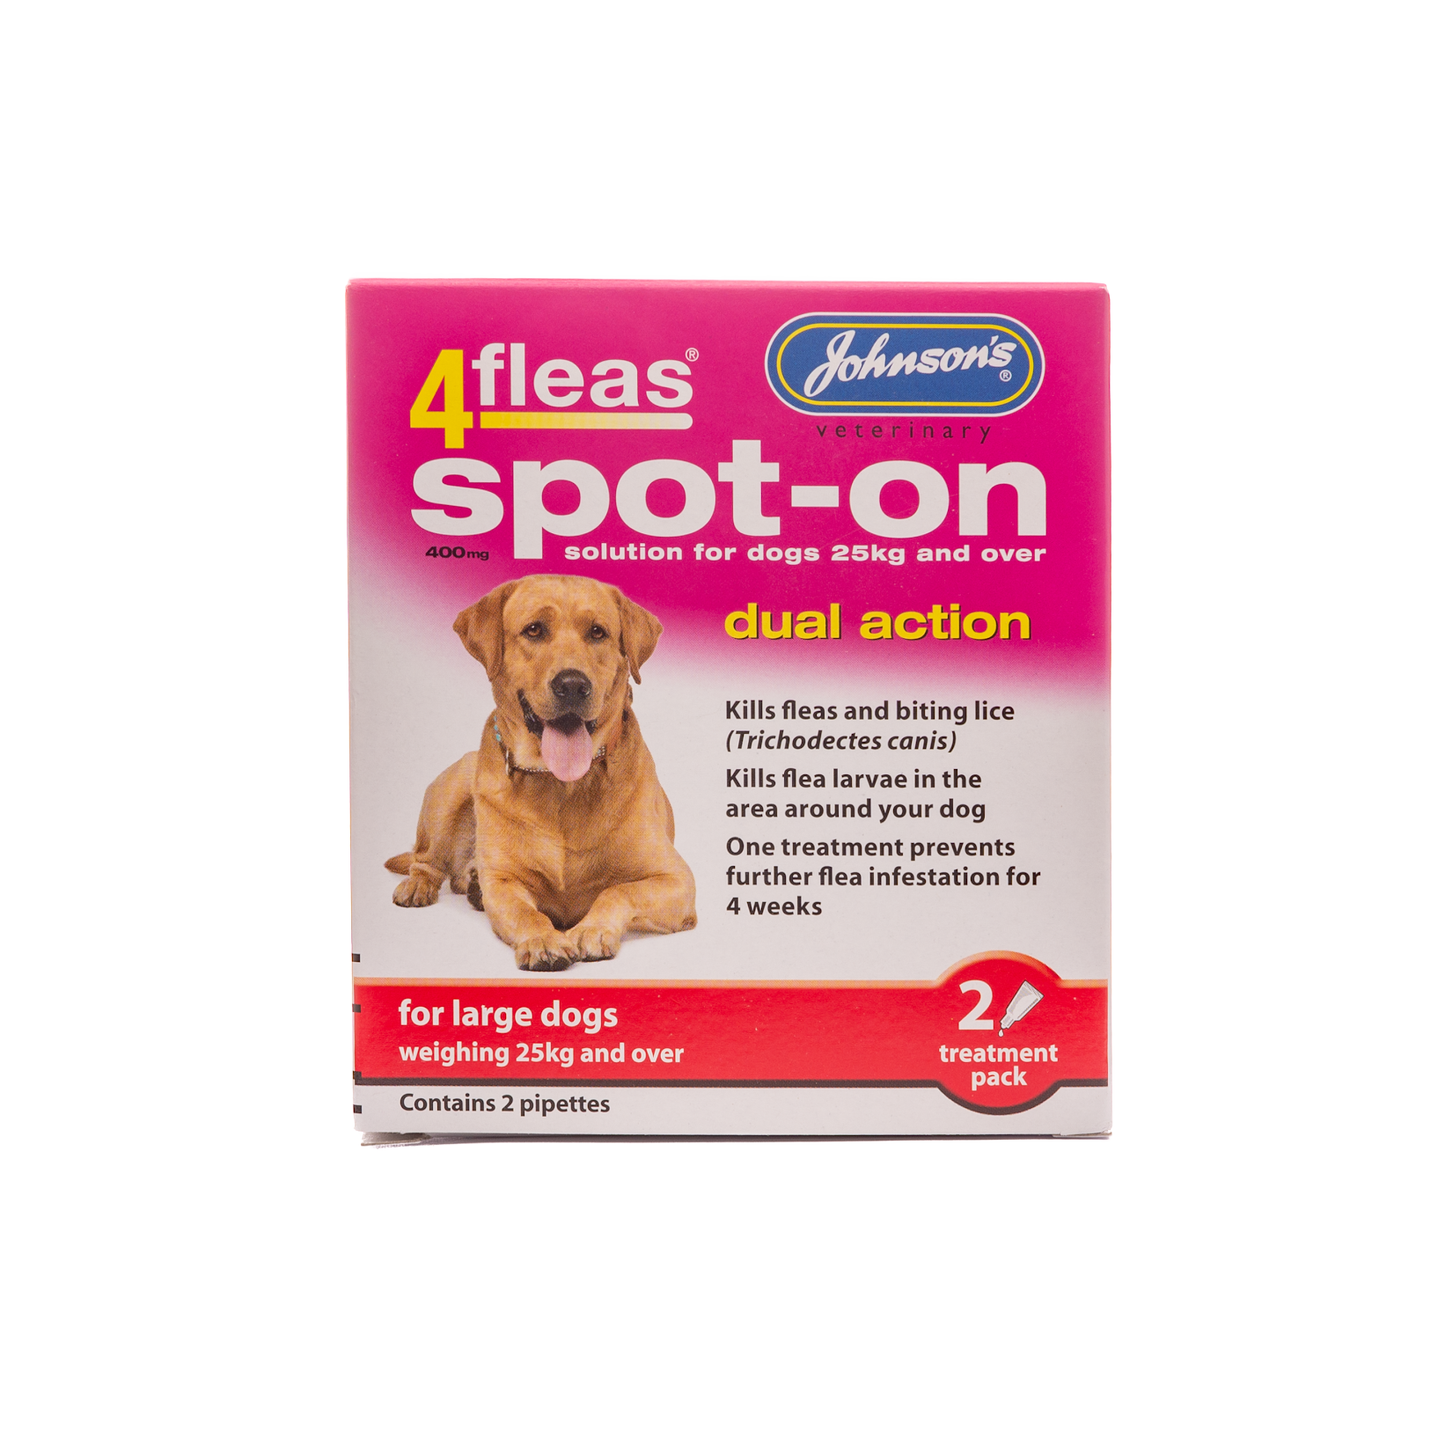 4fleas Spot-on Large Dog 2 Vial Pack